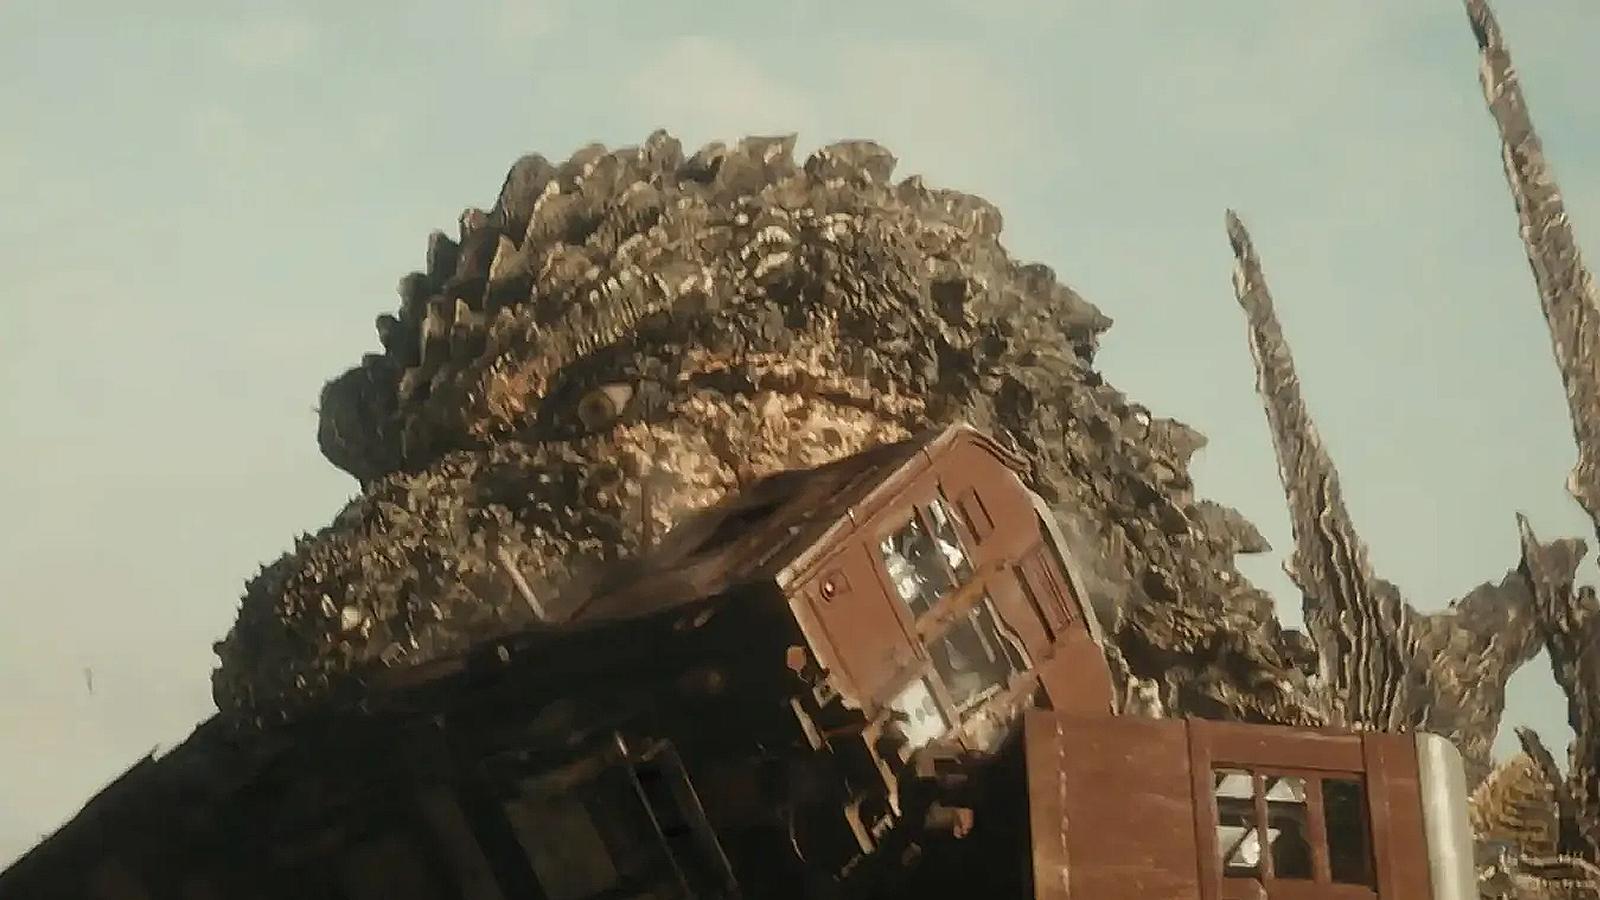 Godzilla bites a tram in Godzilla Minus One